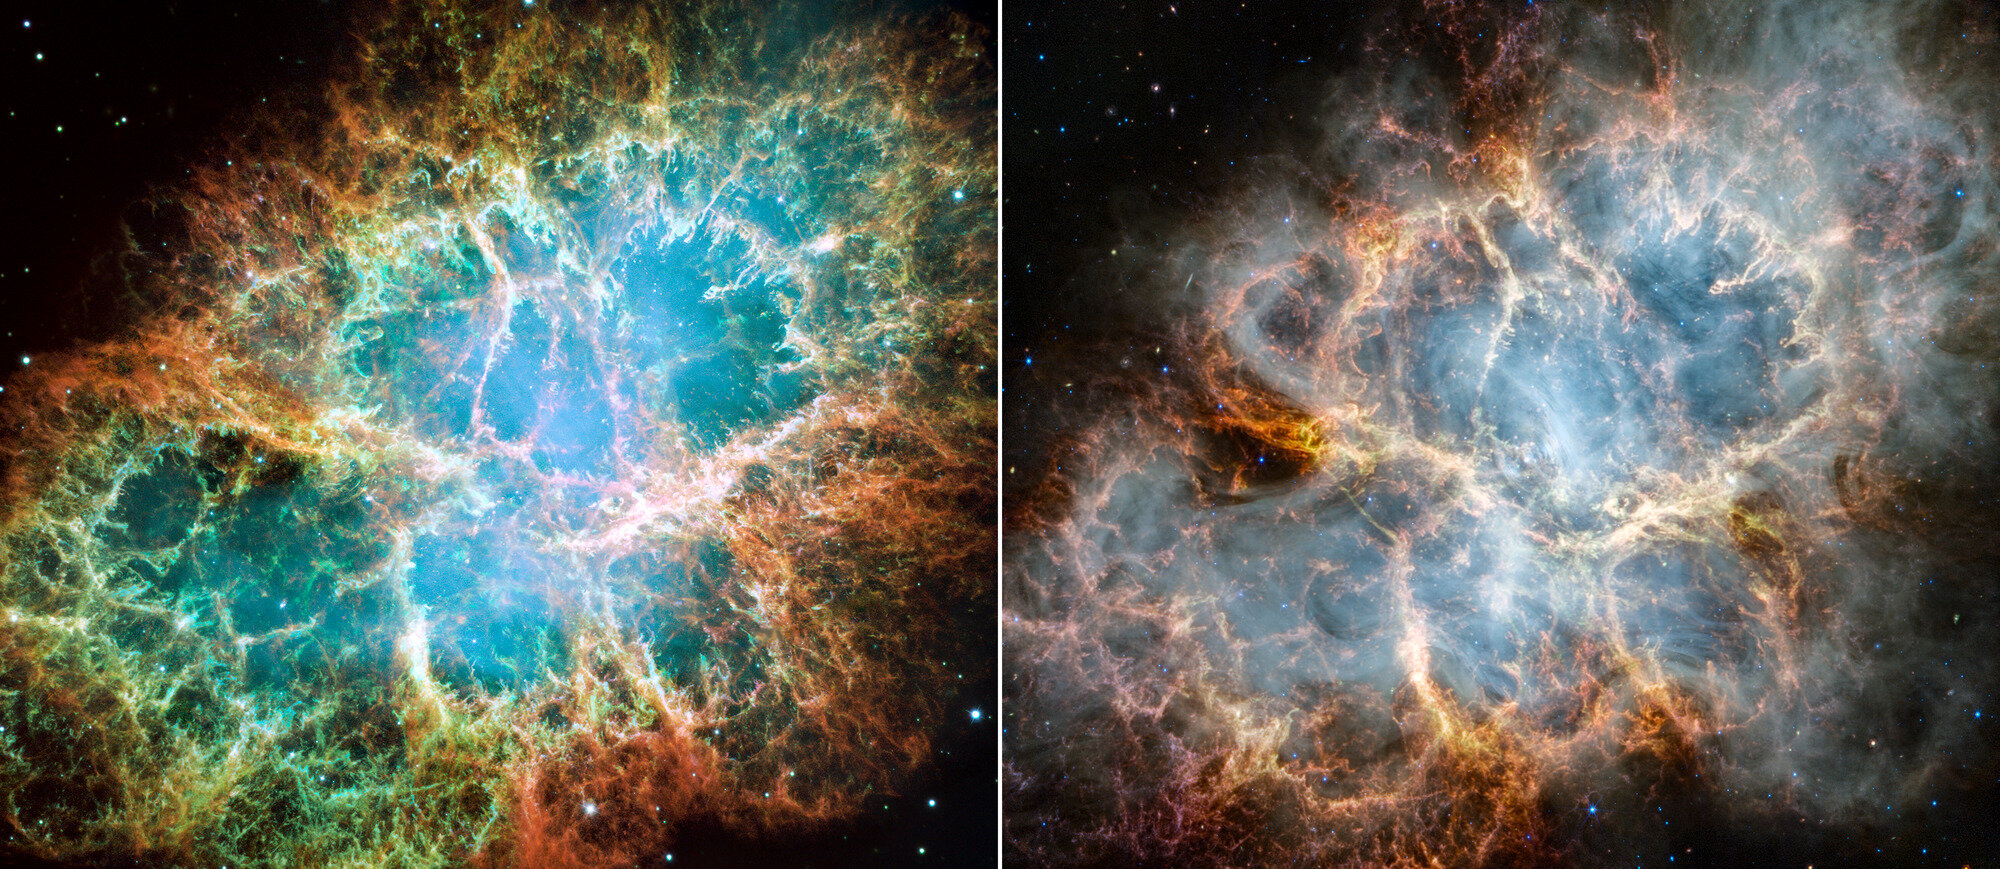 Usporedba Rakove maglice kakvu vidimo pomoću svemirskog teleskopa Hubble u optičkoj svjetlosti (lijevo) i svemirskog teleskopa James Webb u infracrvenom svjetlu (desno). Zasluge: Slika: NASA, ESA, CSA, STScI, Jeff Hester (ASU), Allison Loll (ASU), Tea Temim (Sveučilište Princeton)